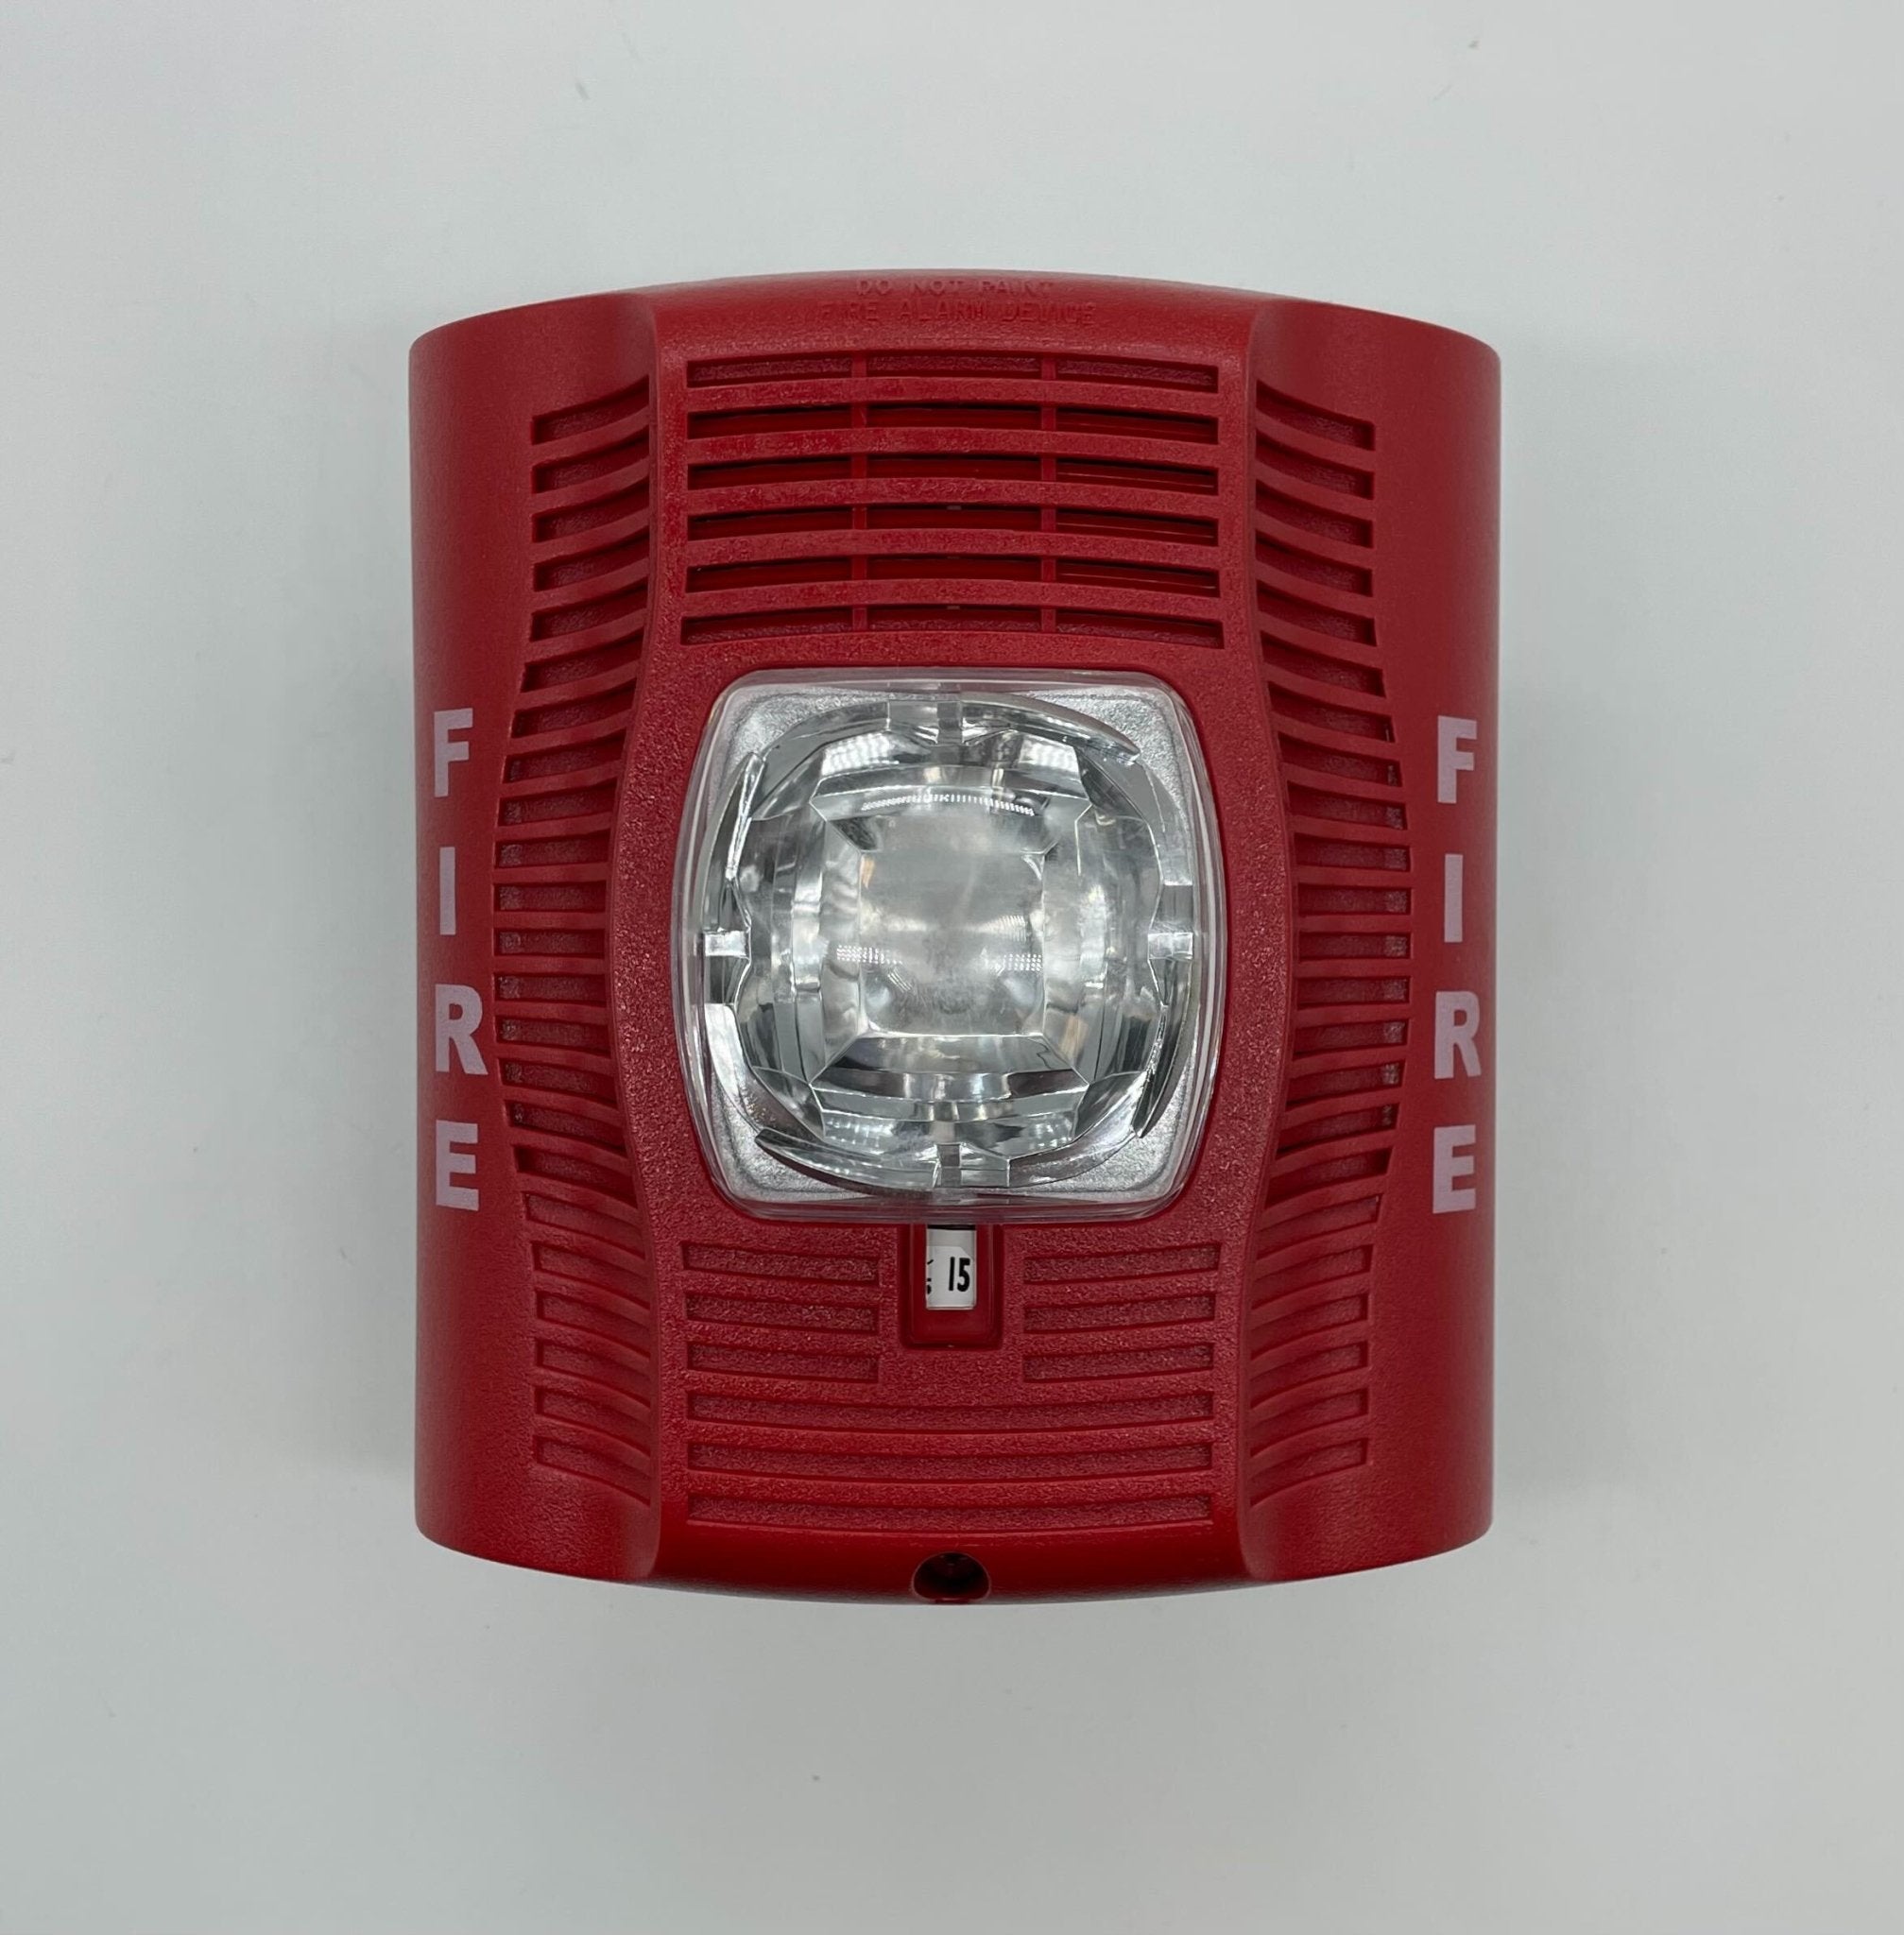 System Sensor SPSR - The Fire Alarm Supplier